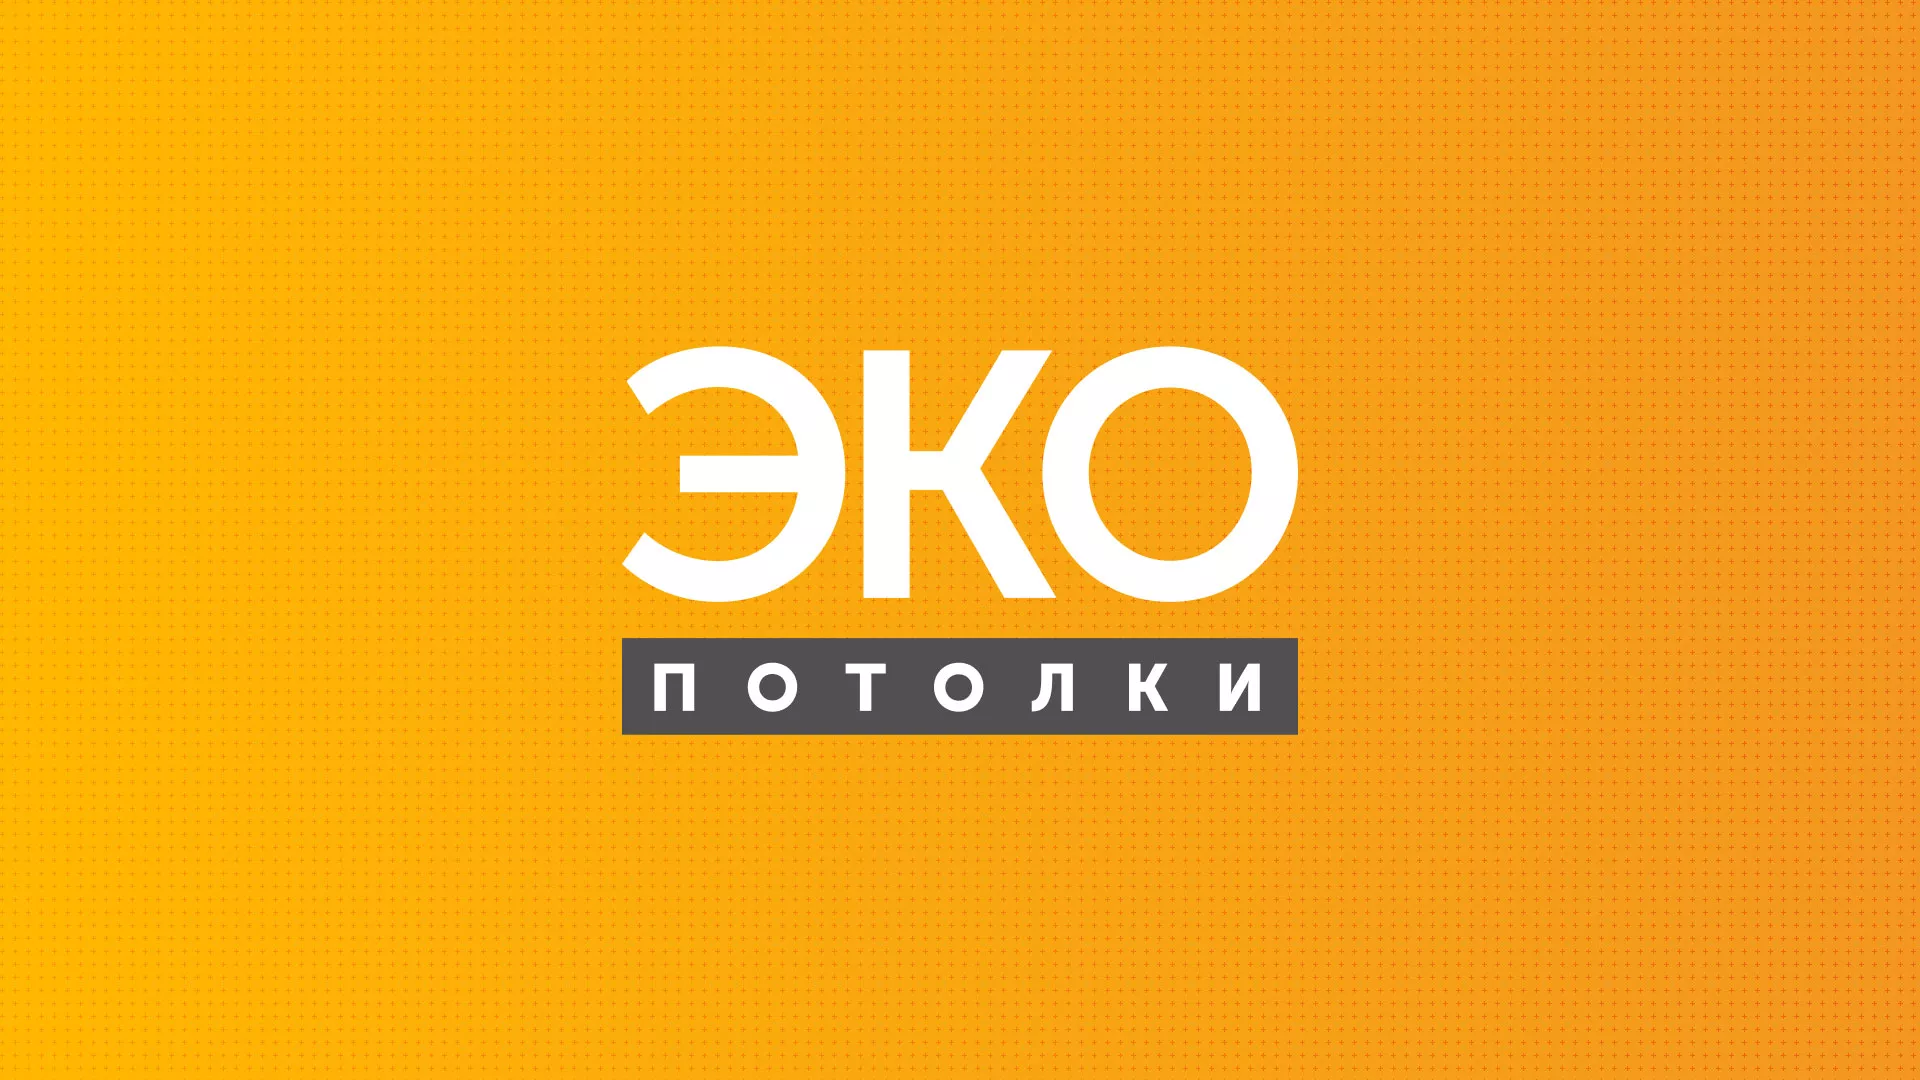 Разработка сайта по натяжным потолкам «Эко Потолки» в Черемхово